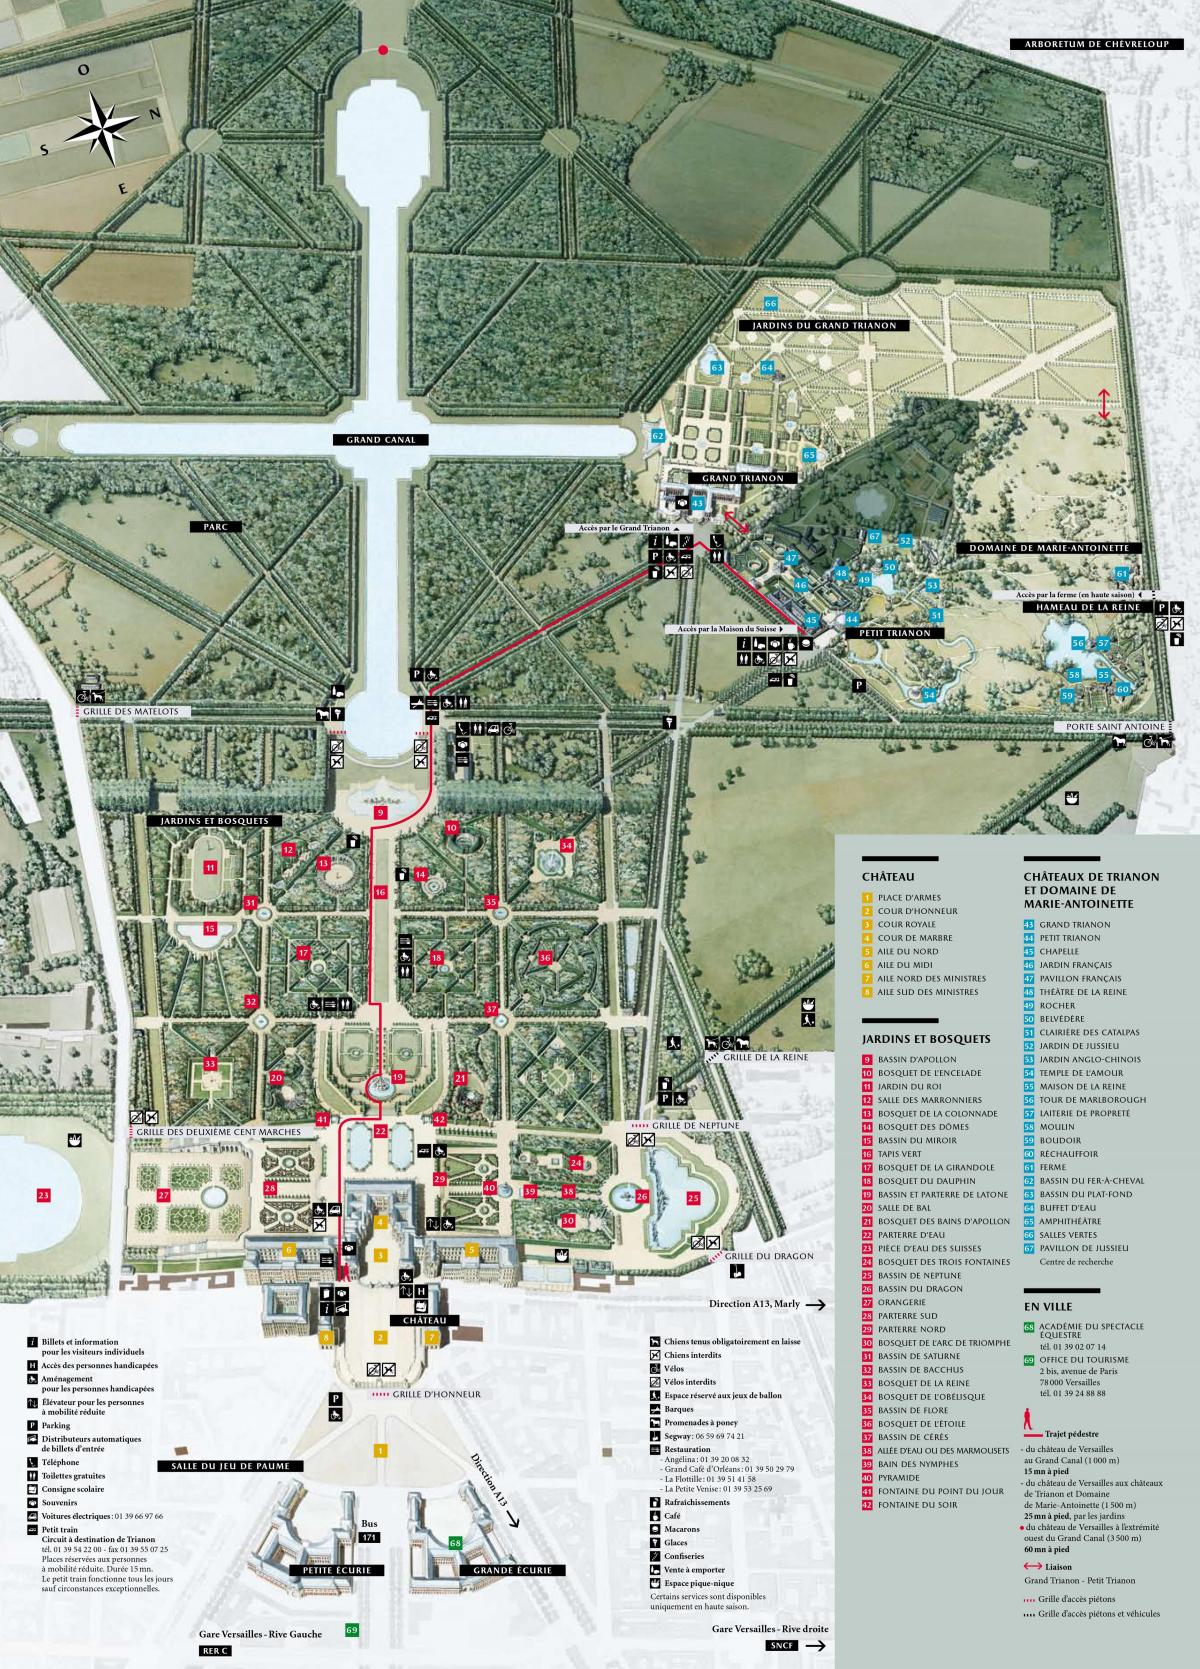 Zemljevid versajska Palača